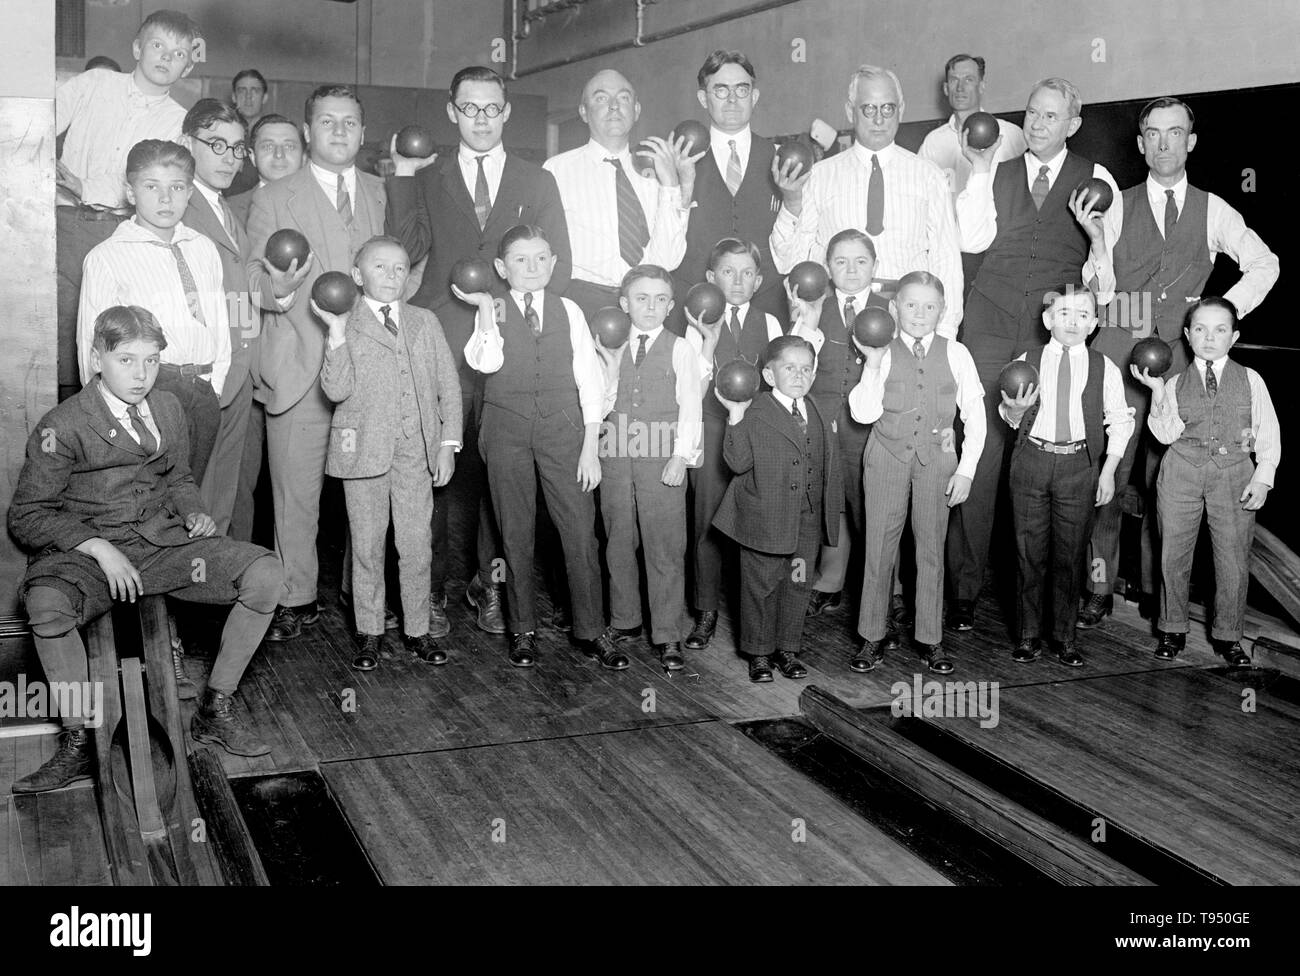 Titel: 'Singer Zwerge Bowling an YMCA." Sänger der Zwerge waren ein beliebtes vaudeville Gruppe in der ersten Hälfte des 20. Jahrhunderts. Leopold von Sänger (Mai 3, 1877 - März 5, 1951), Sänger der Zwerge in 1912-13, und baute die idget Liliputstadt, einer 'City' Die "Venedig in Wien" Amusement Park, wo Sie durchgeführt. Die Liliputstadt war ein großer Erfolg, Sänger begann mit seinem Darsteller in ganz Europa zu bereisen und dabei neue Mitglieder rekrutiert. Stockfoto